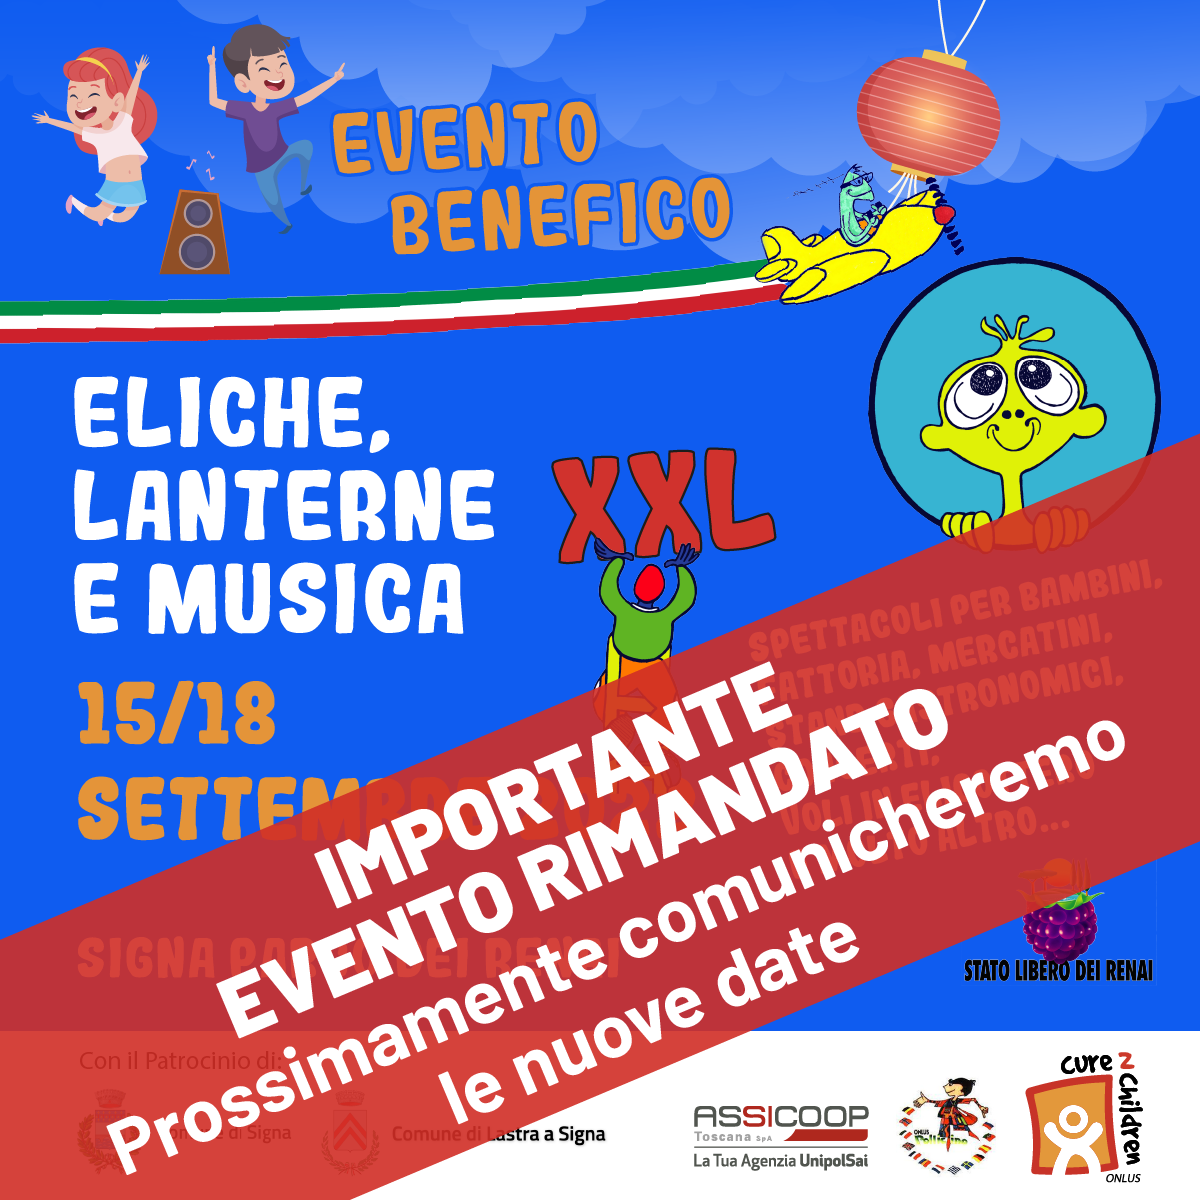 Evento Benefico: Eliche, Lanterne e Musica XXL